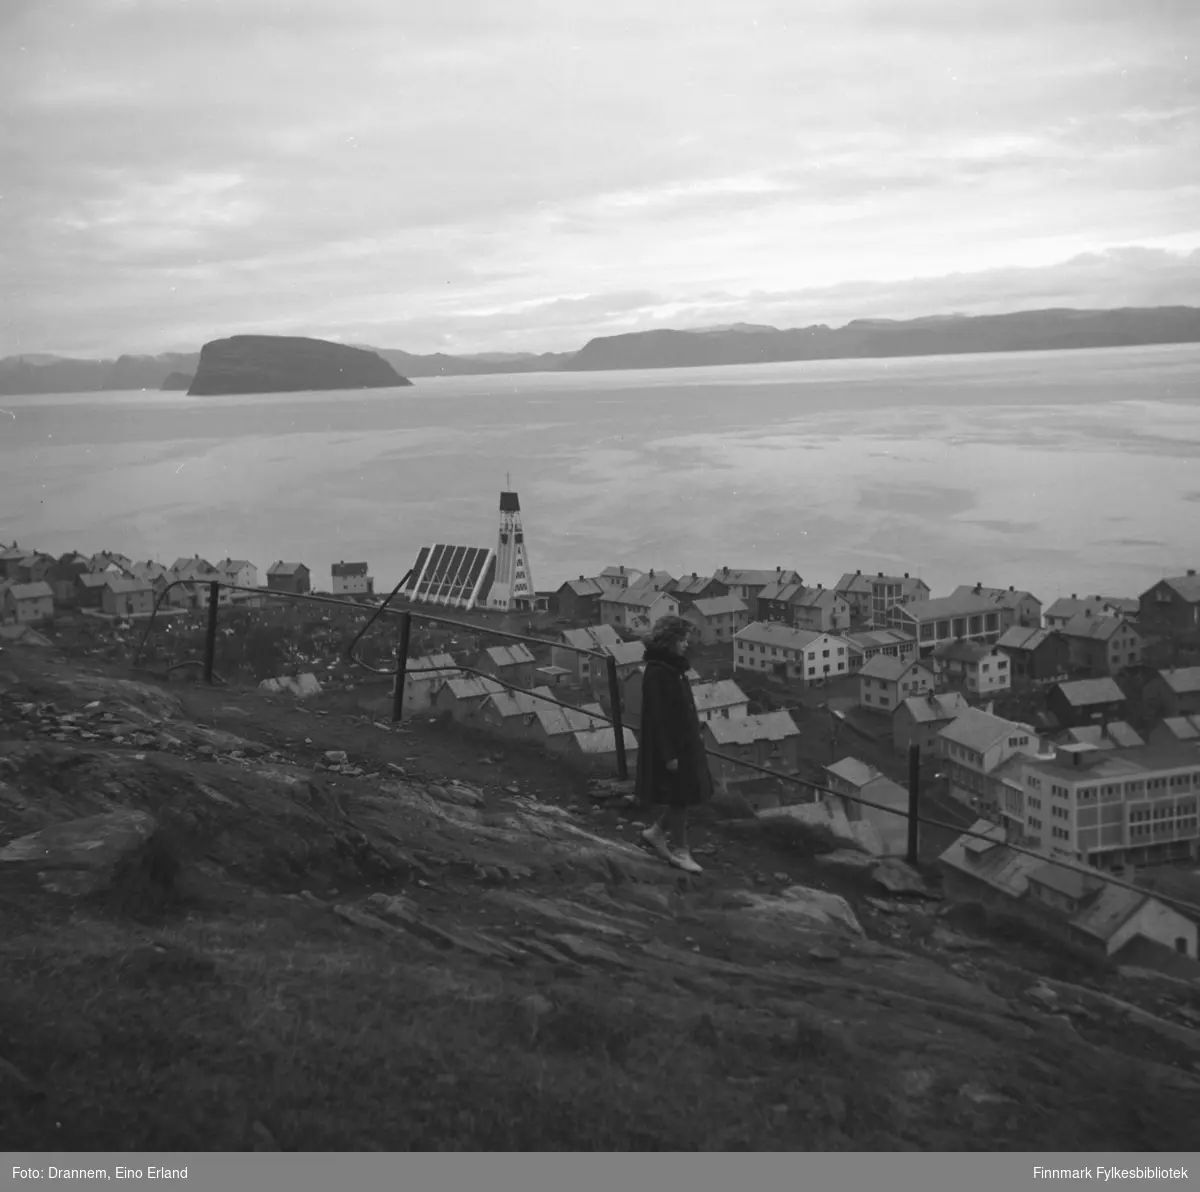 Oversiktsbilde over Hammerfest sentrum/Haugen tatt fra fjellet Salen. Øya Håja ses i bakgrunnen.